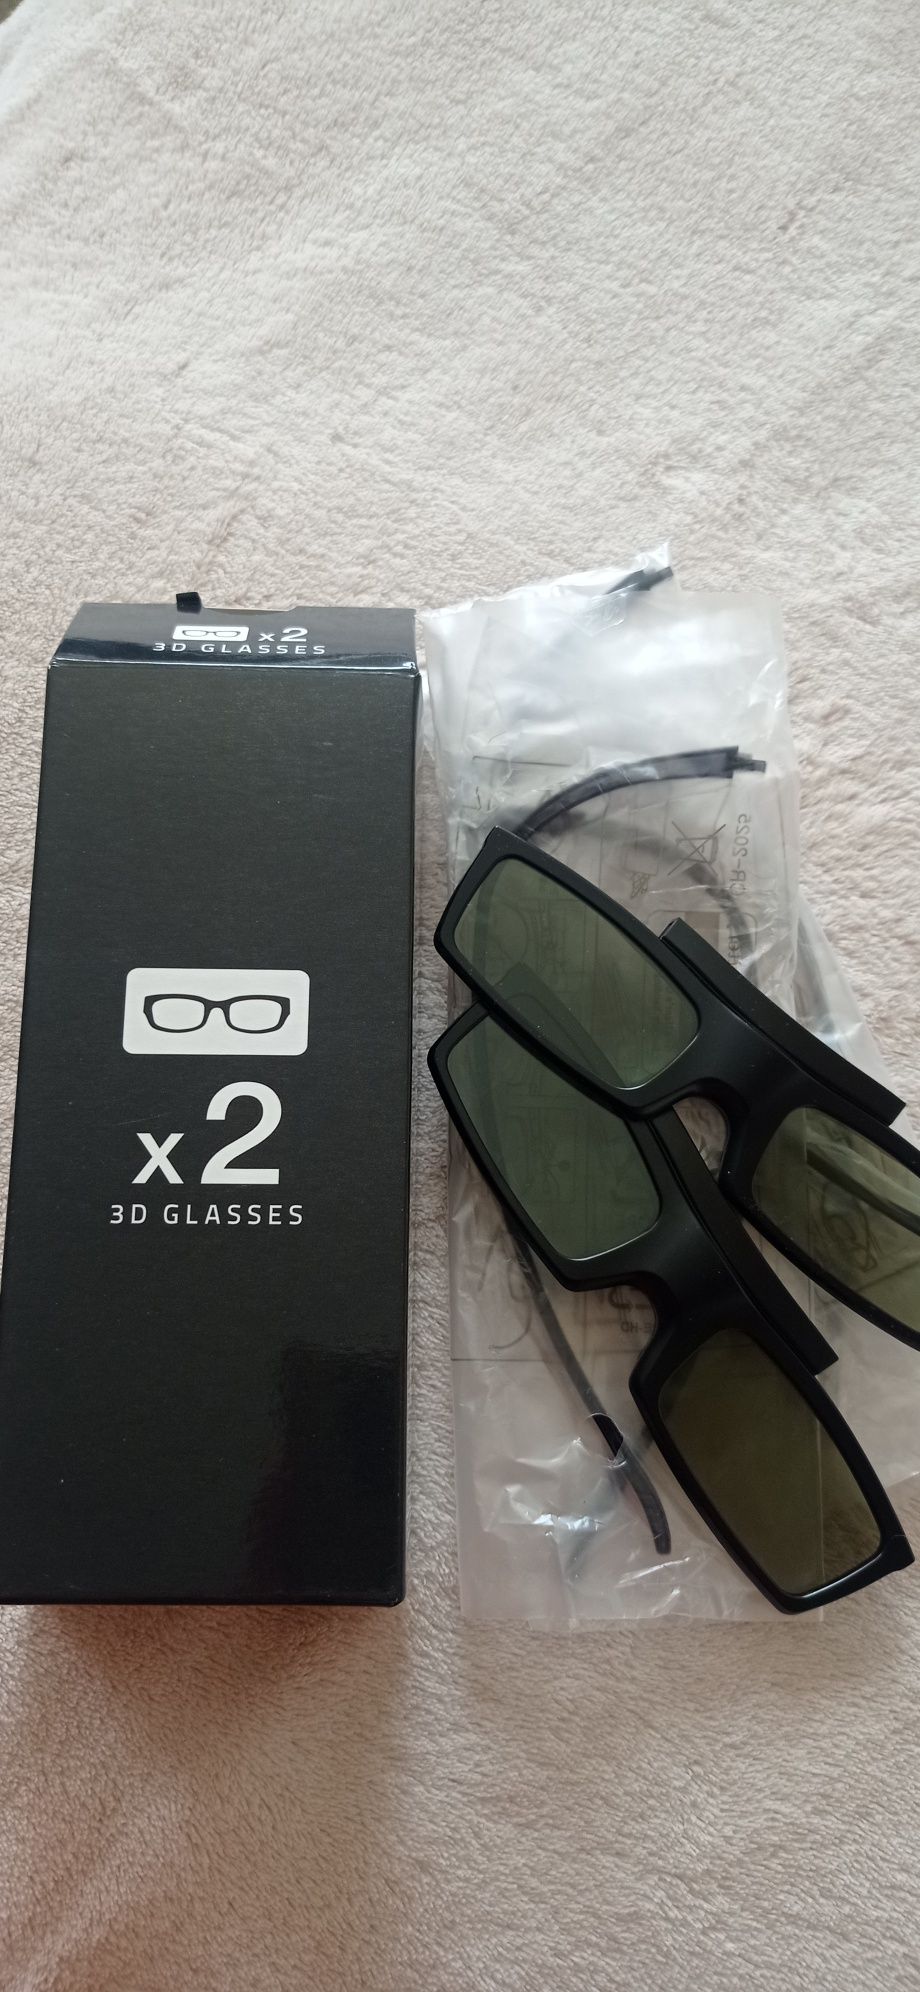 Очила Samsung Full HD 3D Active Glasses  
Активни 3Д очила

Подходящ